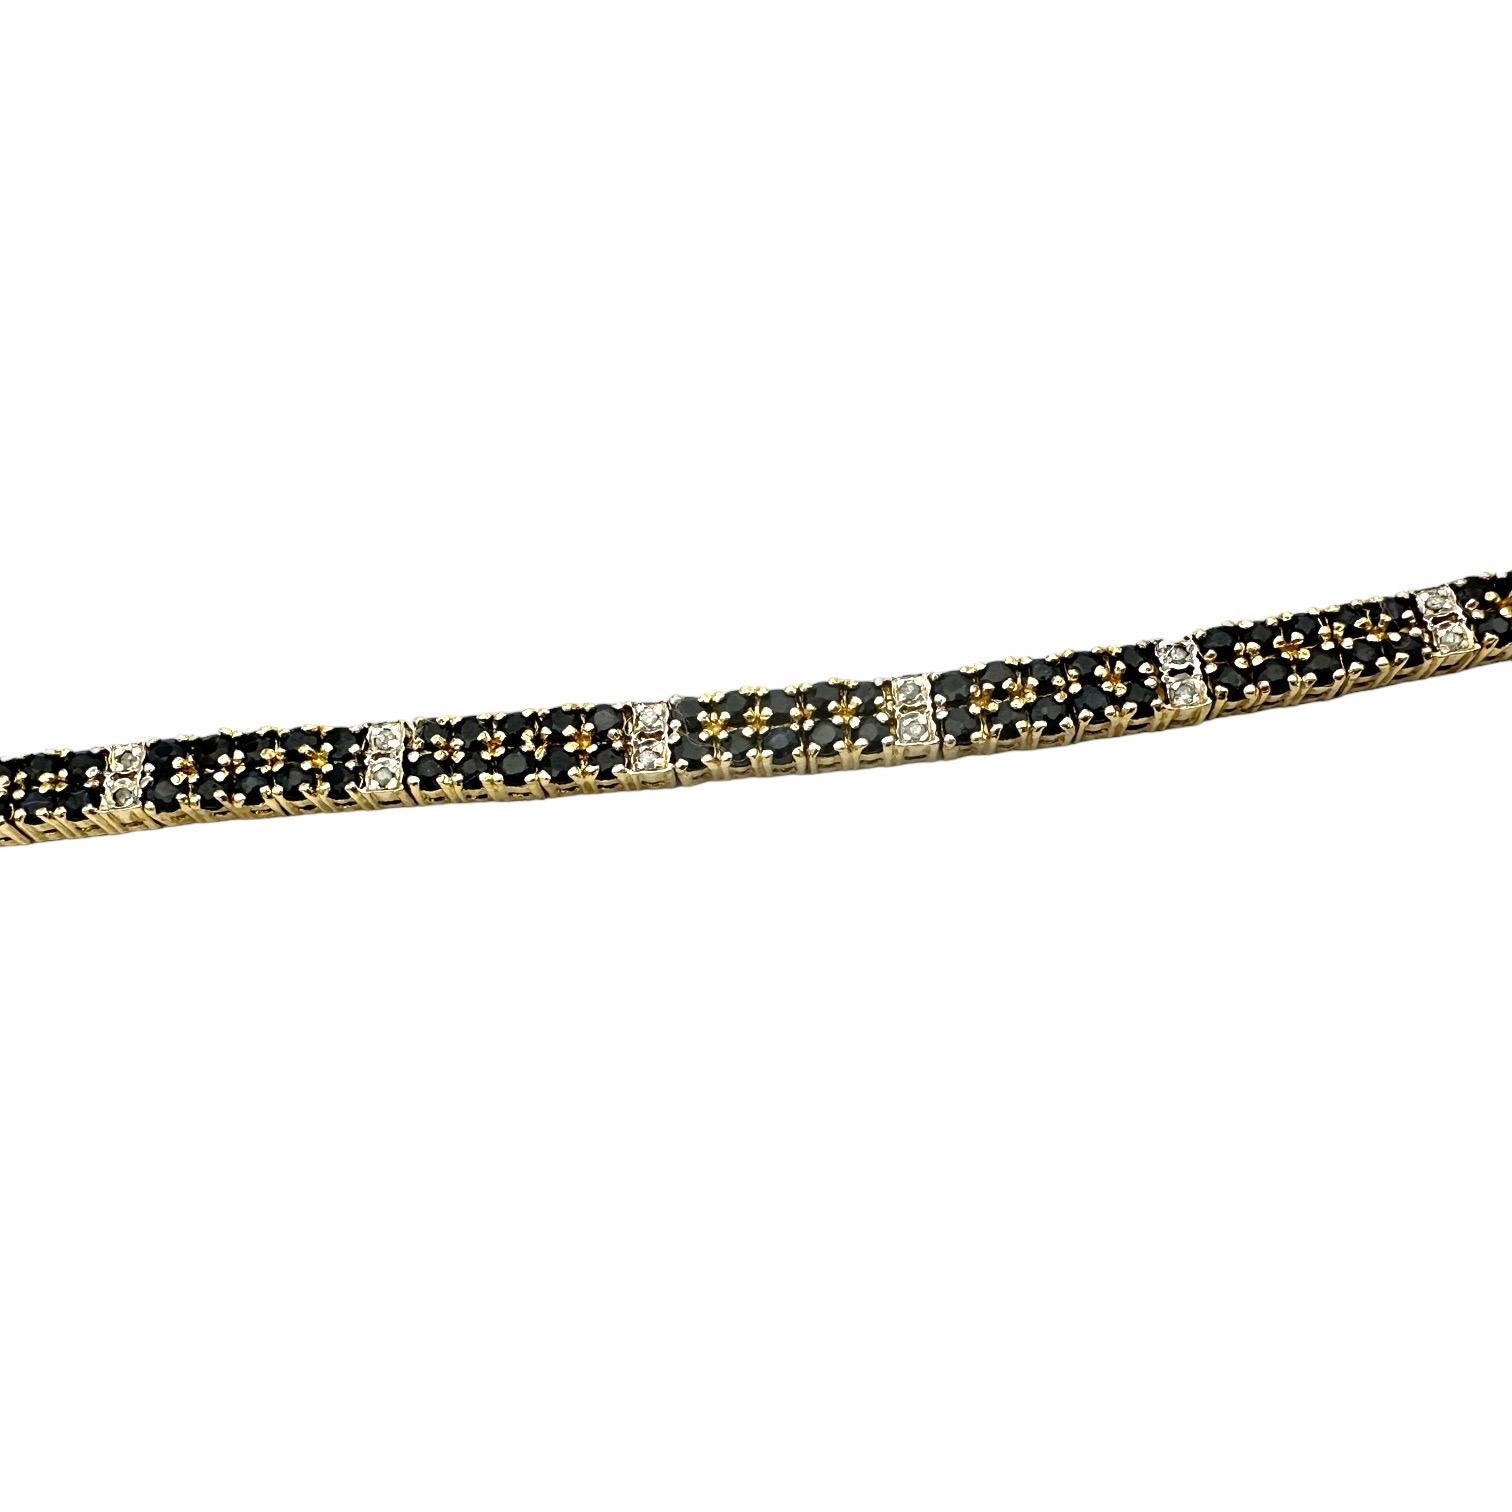 Dieses wunderschöne Armband mit schwarzem Saphir und Diamanten ist aus Sterlinggold gefertigt und verfügt über eine doppelte Reihe schwarzer Saphirsteine, die für zusätzlichen Glanz sorgen. Sein einzigartiges Design eignet sich perfekt für besondere